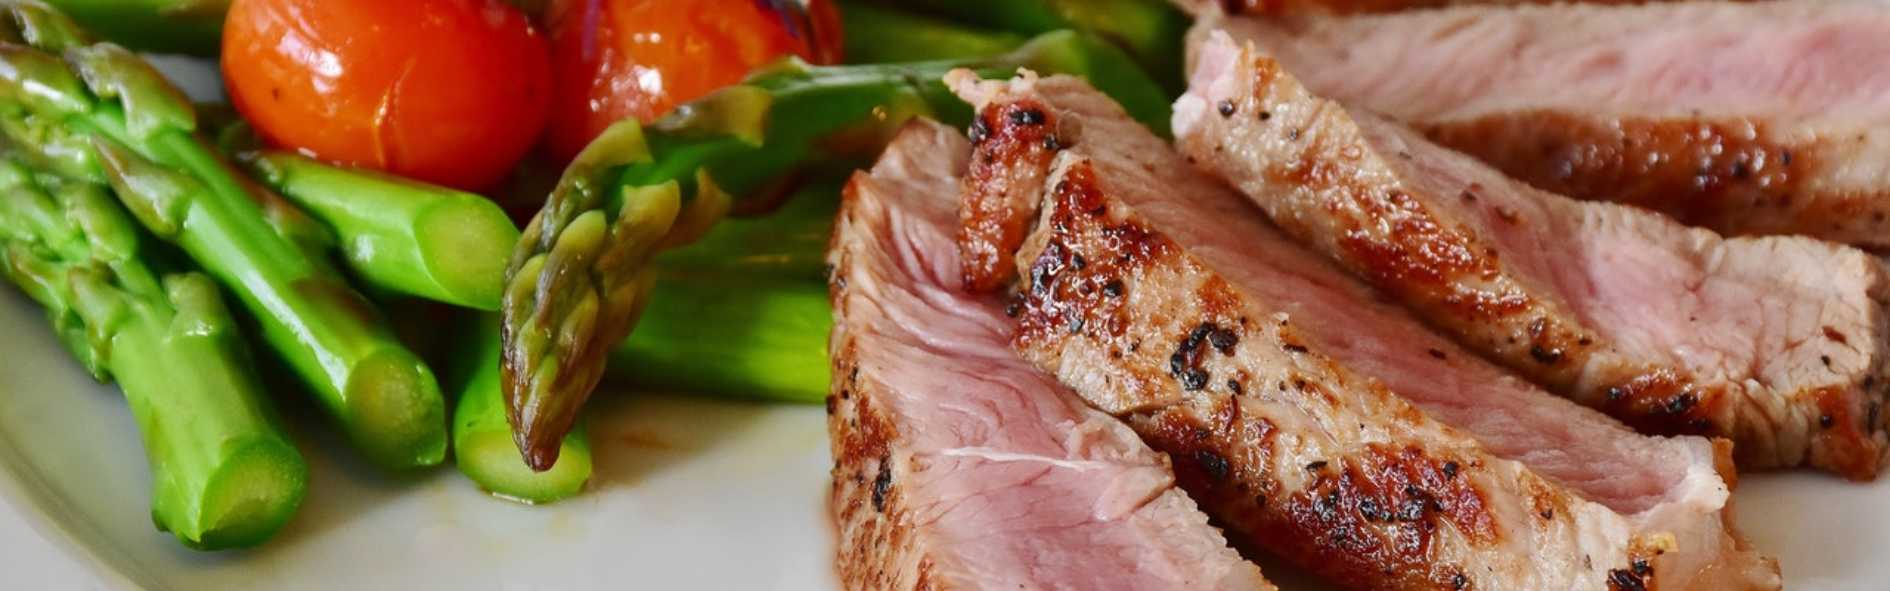 Descubre los cortes del cerdo y cómo puedes cocinarlos